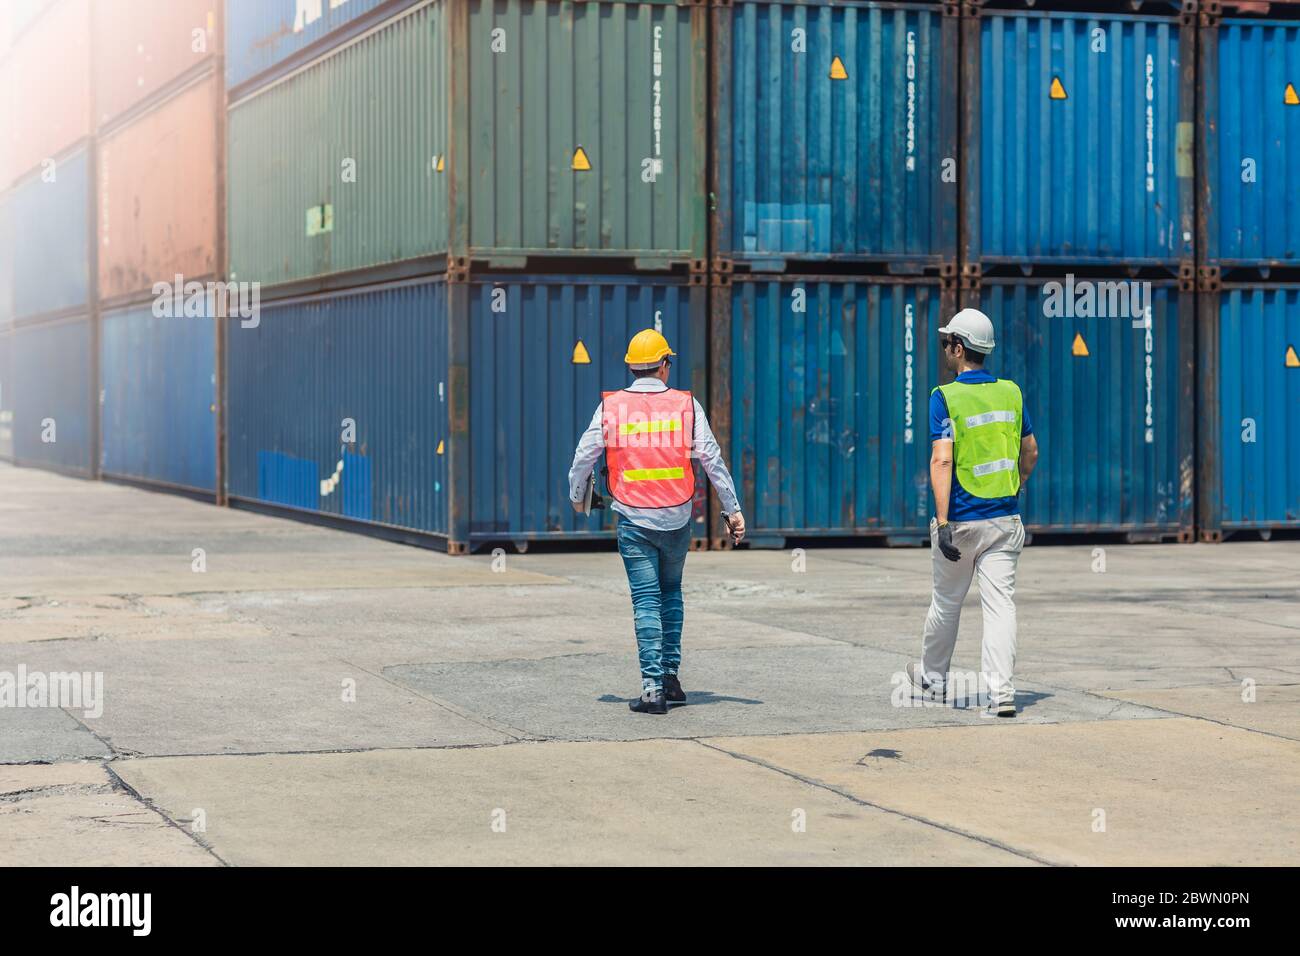 Mitarbeiter Arbeitnehmer Mittagessen Pause Walking Sicherheit Check in großen Frachtgut Lager Port Verladung Container sind für die Verschiffung Import Export Industrie. Stockfoto